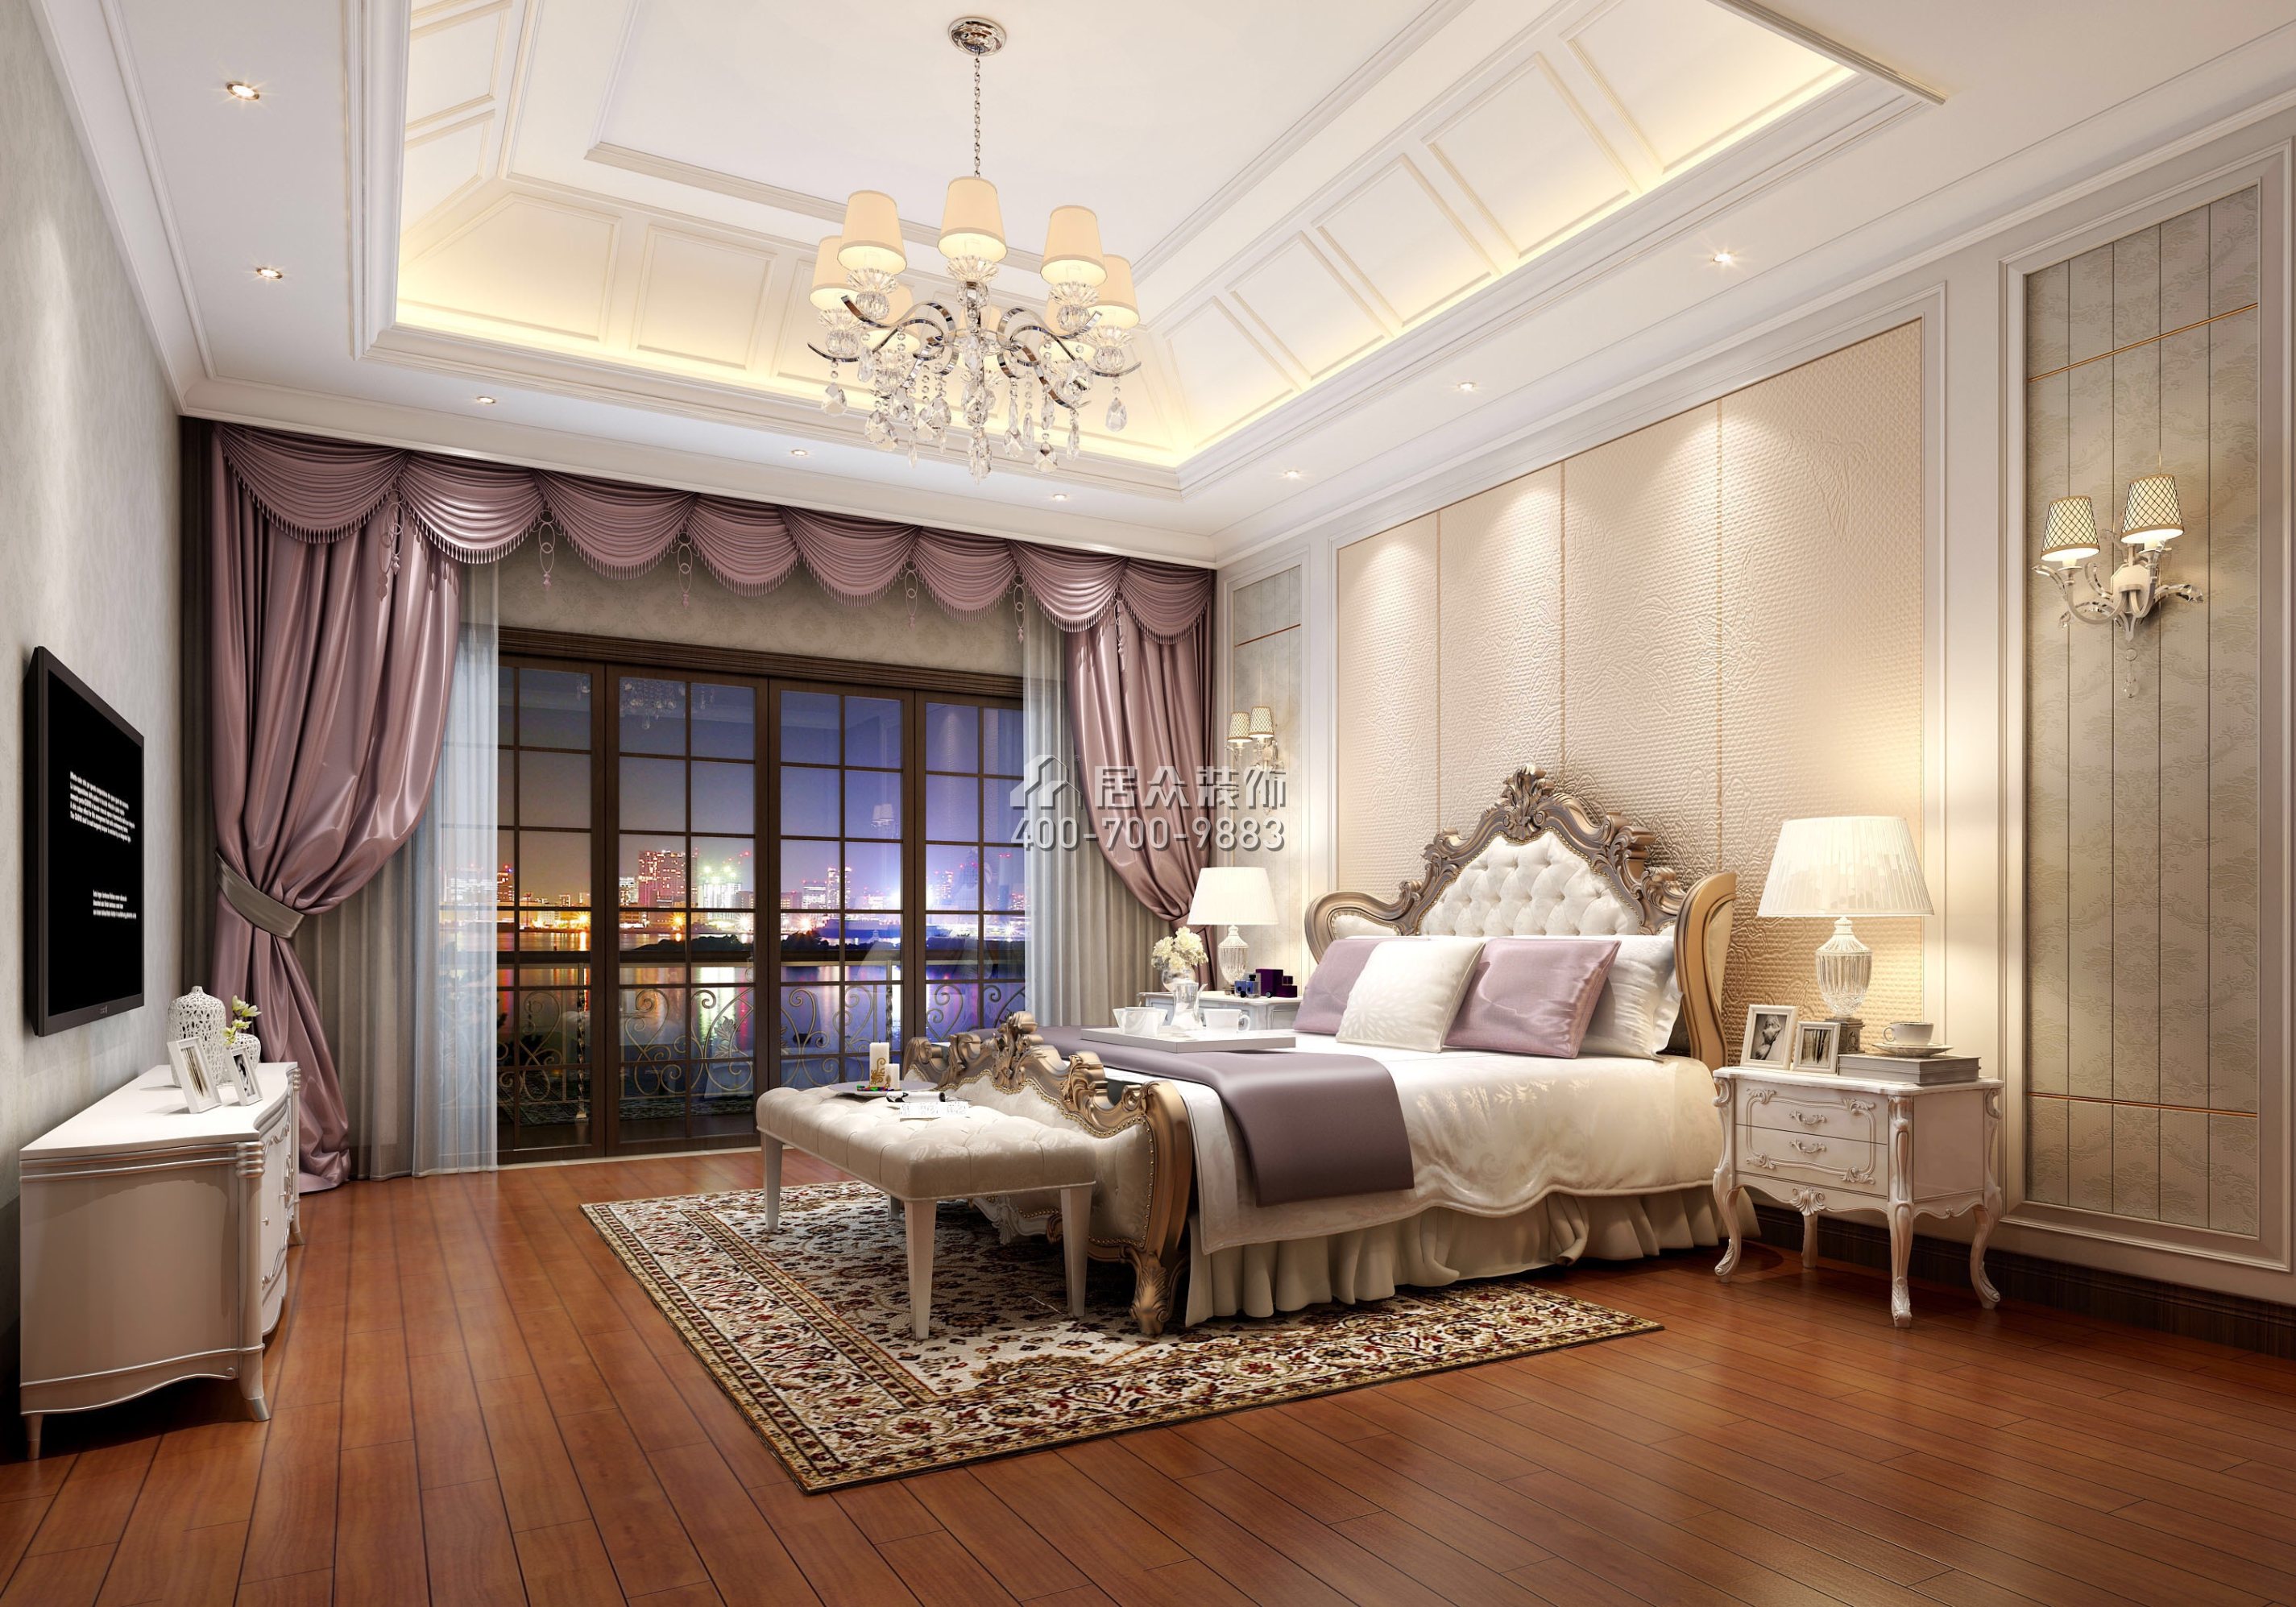 海逸豪庭御峰321平方米美式風格別墅戶型臥室裝修效果圖